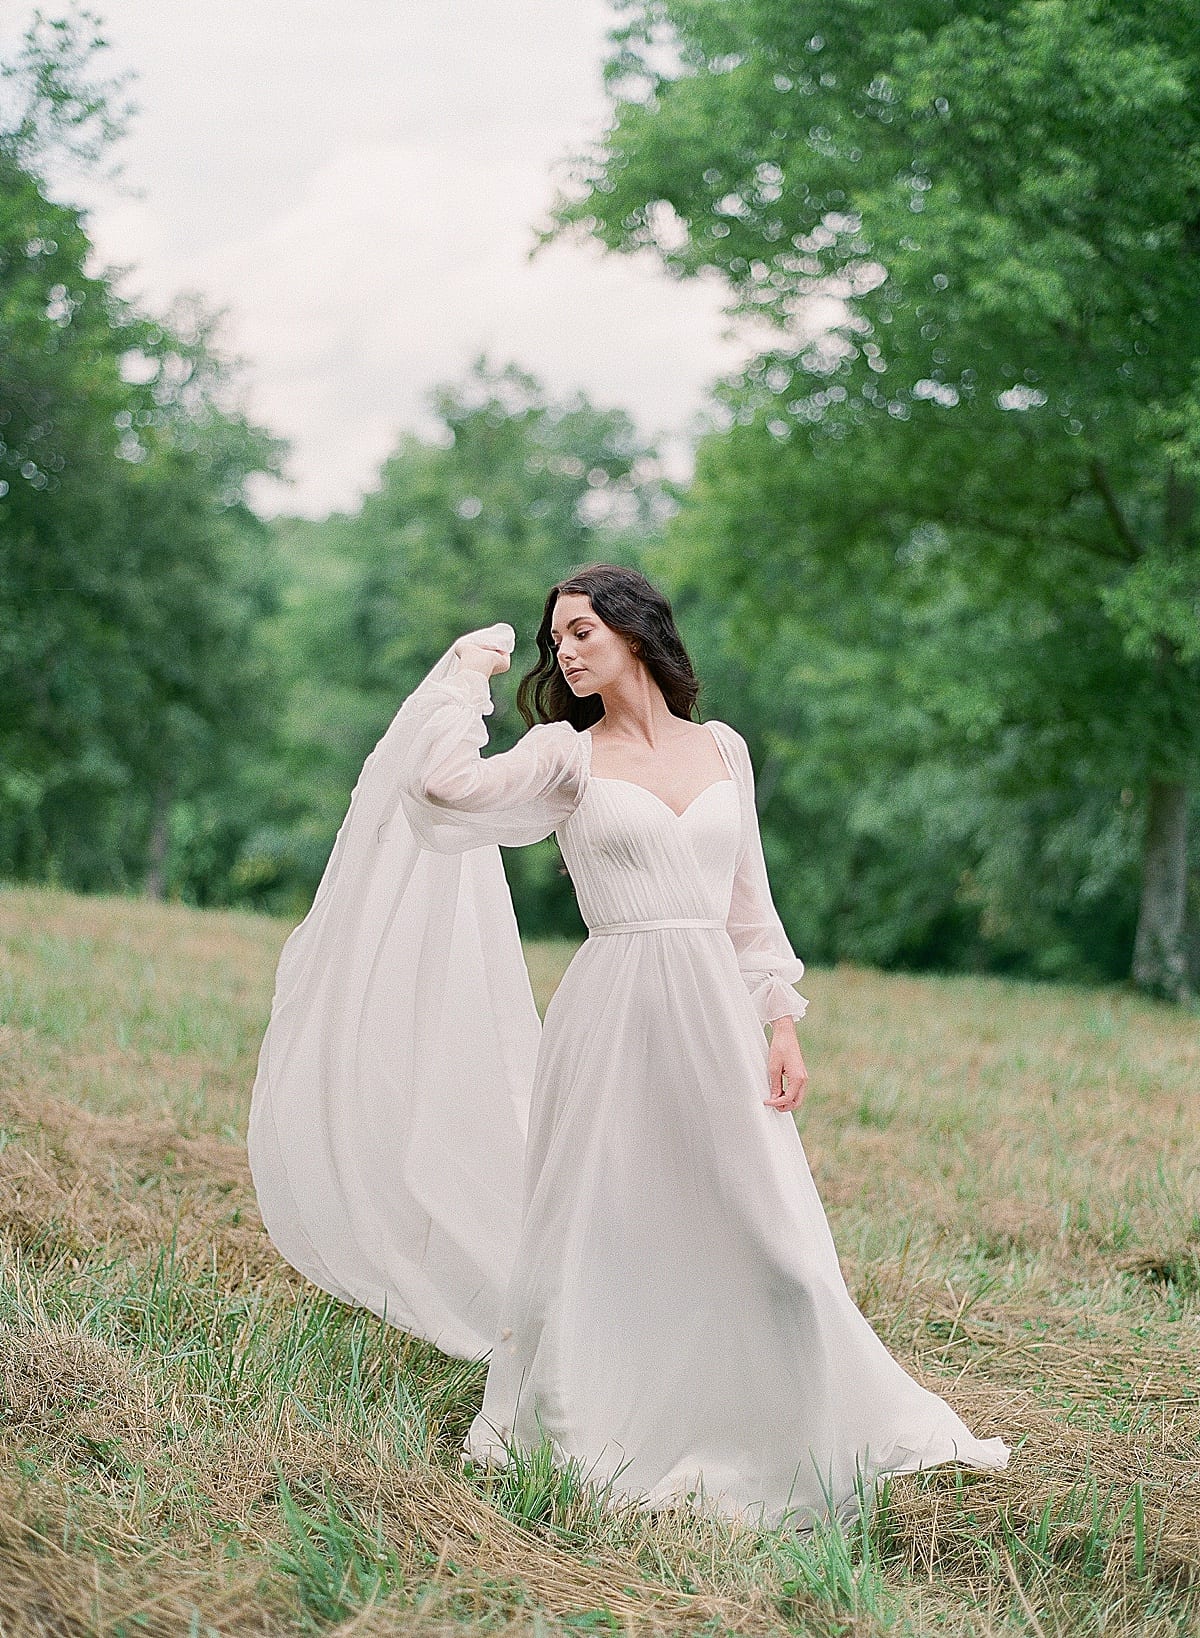 Romantic Bridal portrait of Bride in Field Photo